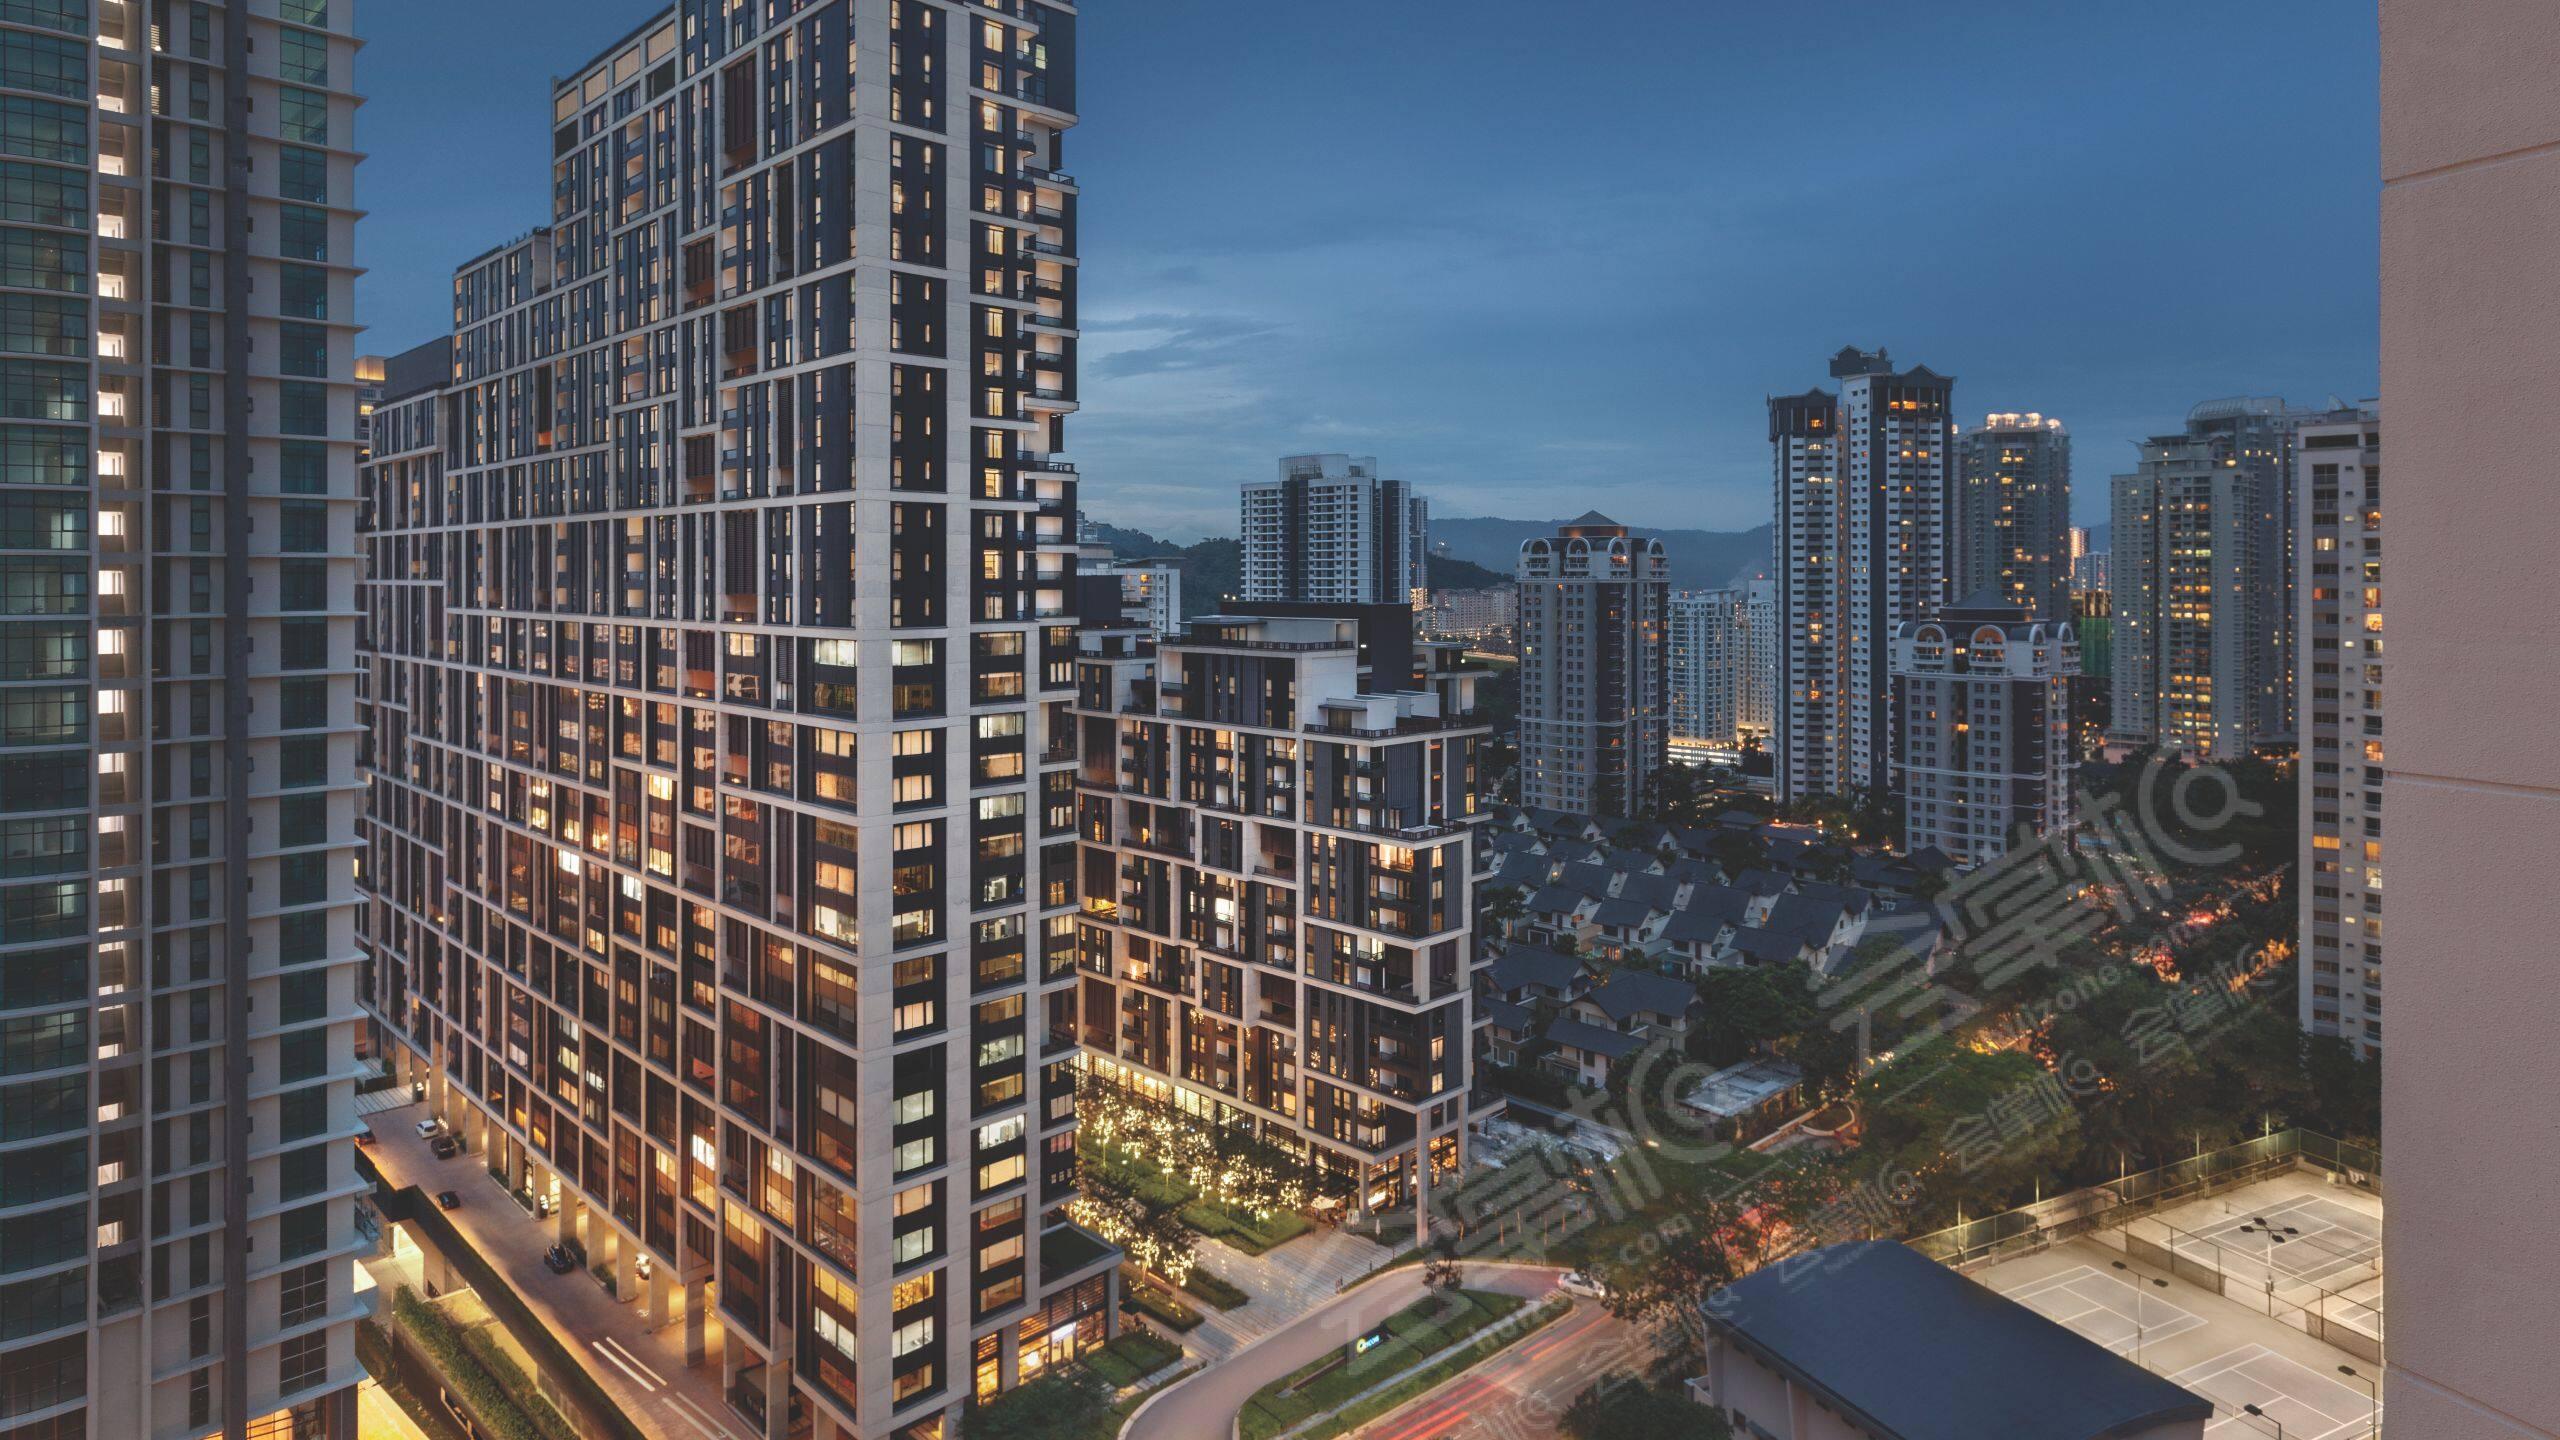 吉隆坡四星级酒店最大容纳200人的会议场地|吉隆坡基亚拉山凯悦嘉寓酒店(Hyatt House Kuala Lumpur, Mont Kiara)的价格与联系方式